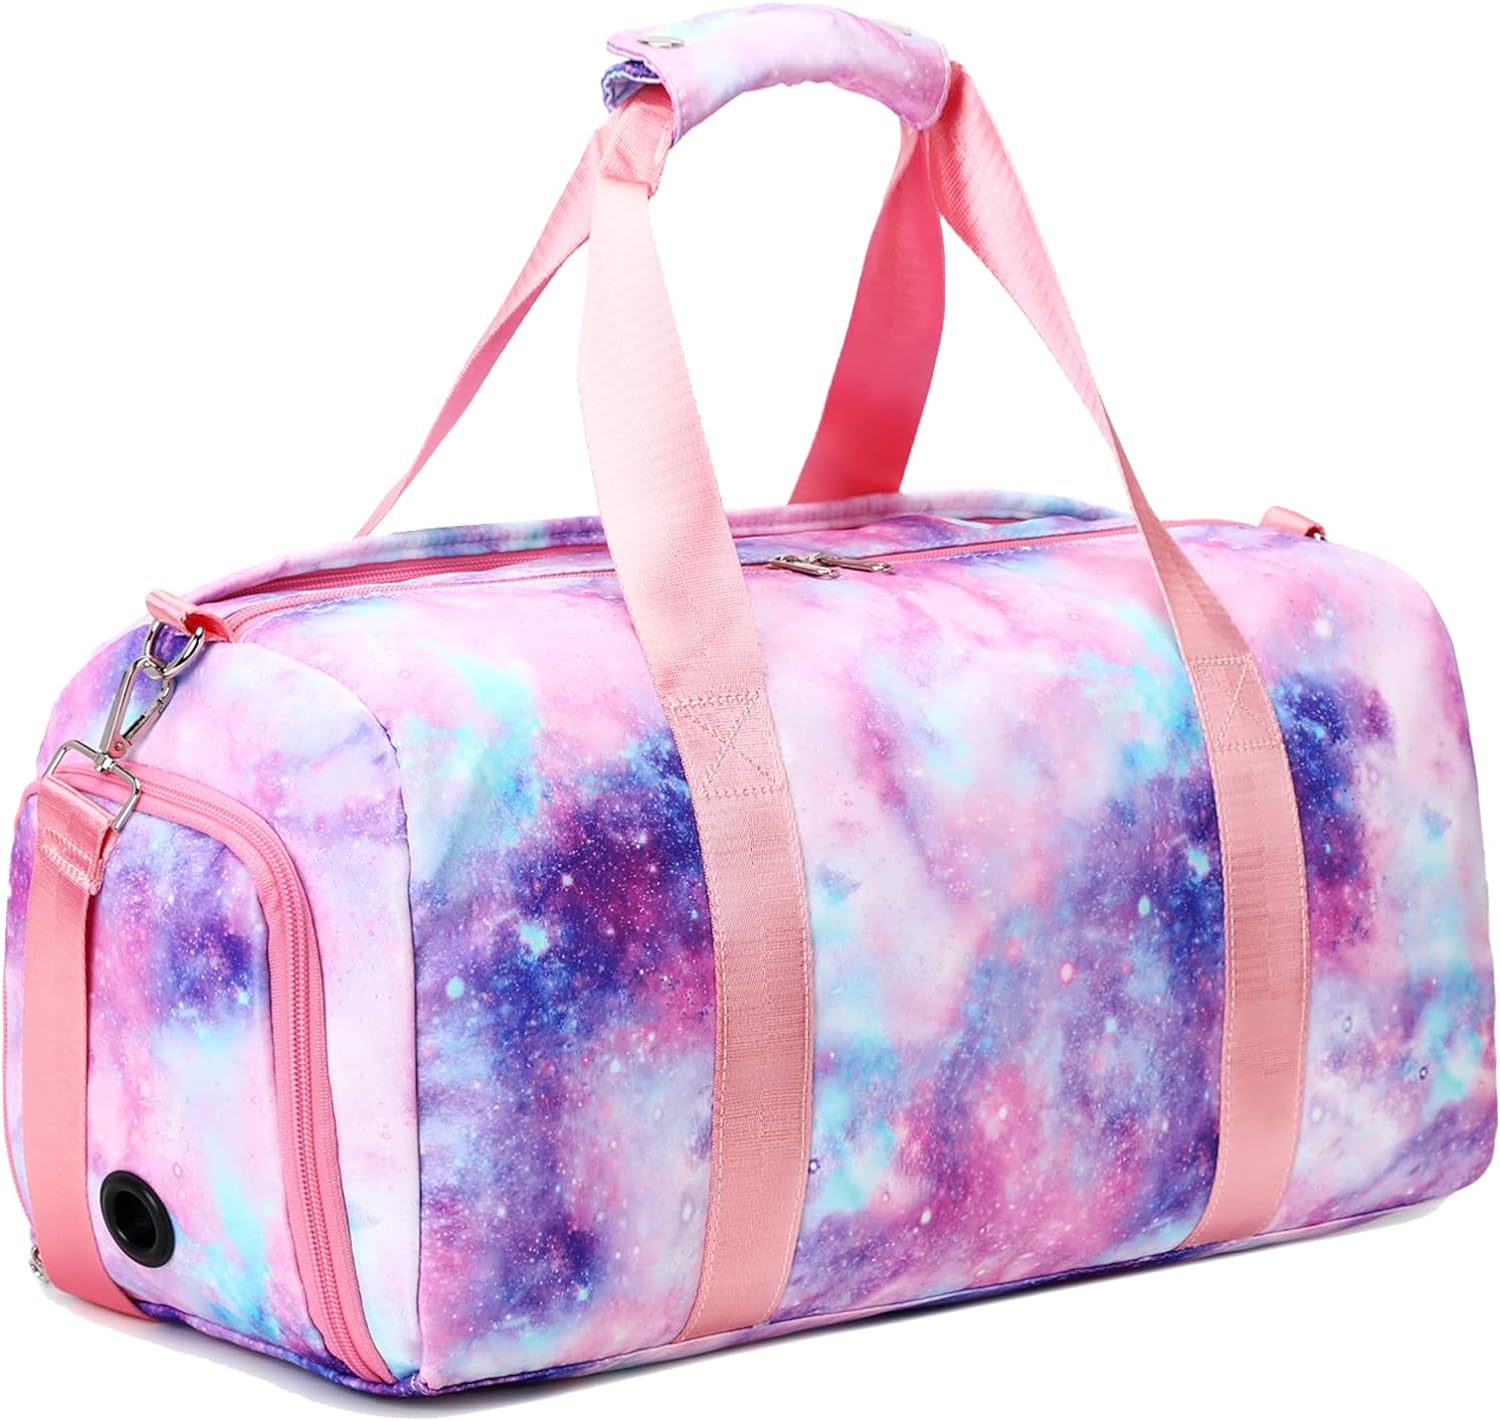 丿Pink Gym Bag with Sequins Compartment &Wet Pocket Gym Duffel Bag Overnight Bag 